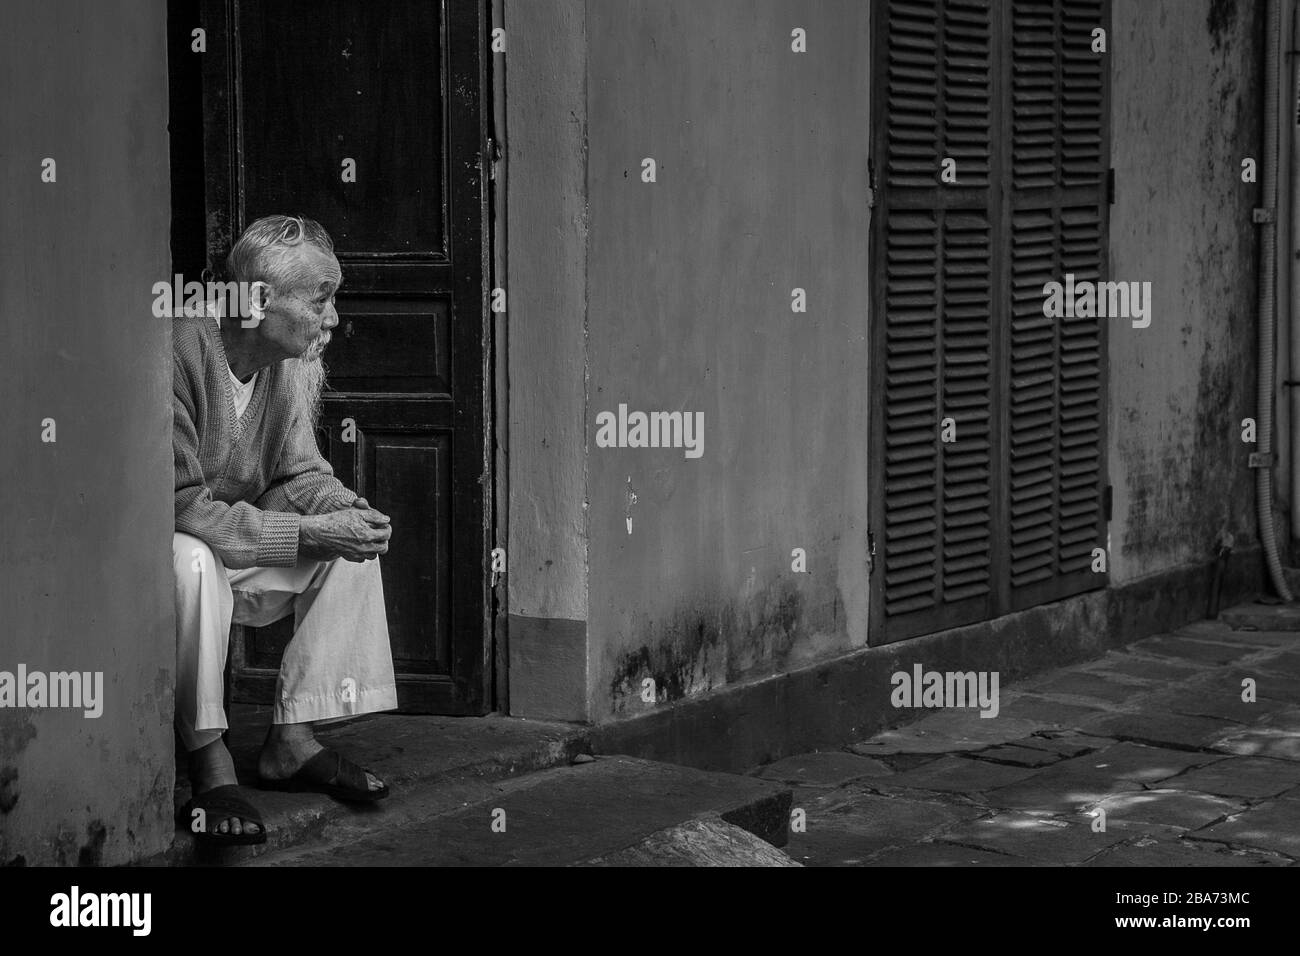 Old Vietnamese man in doorway Stock Photo